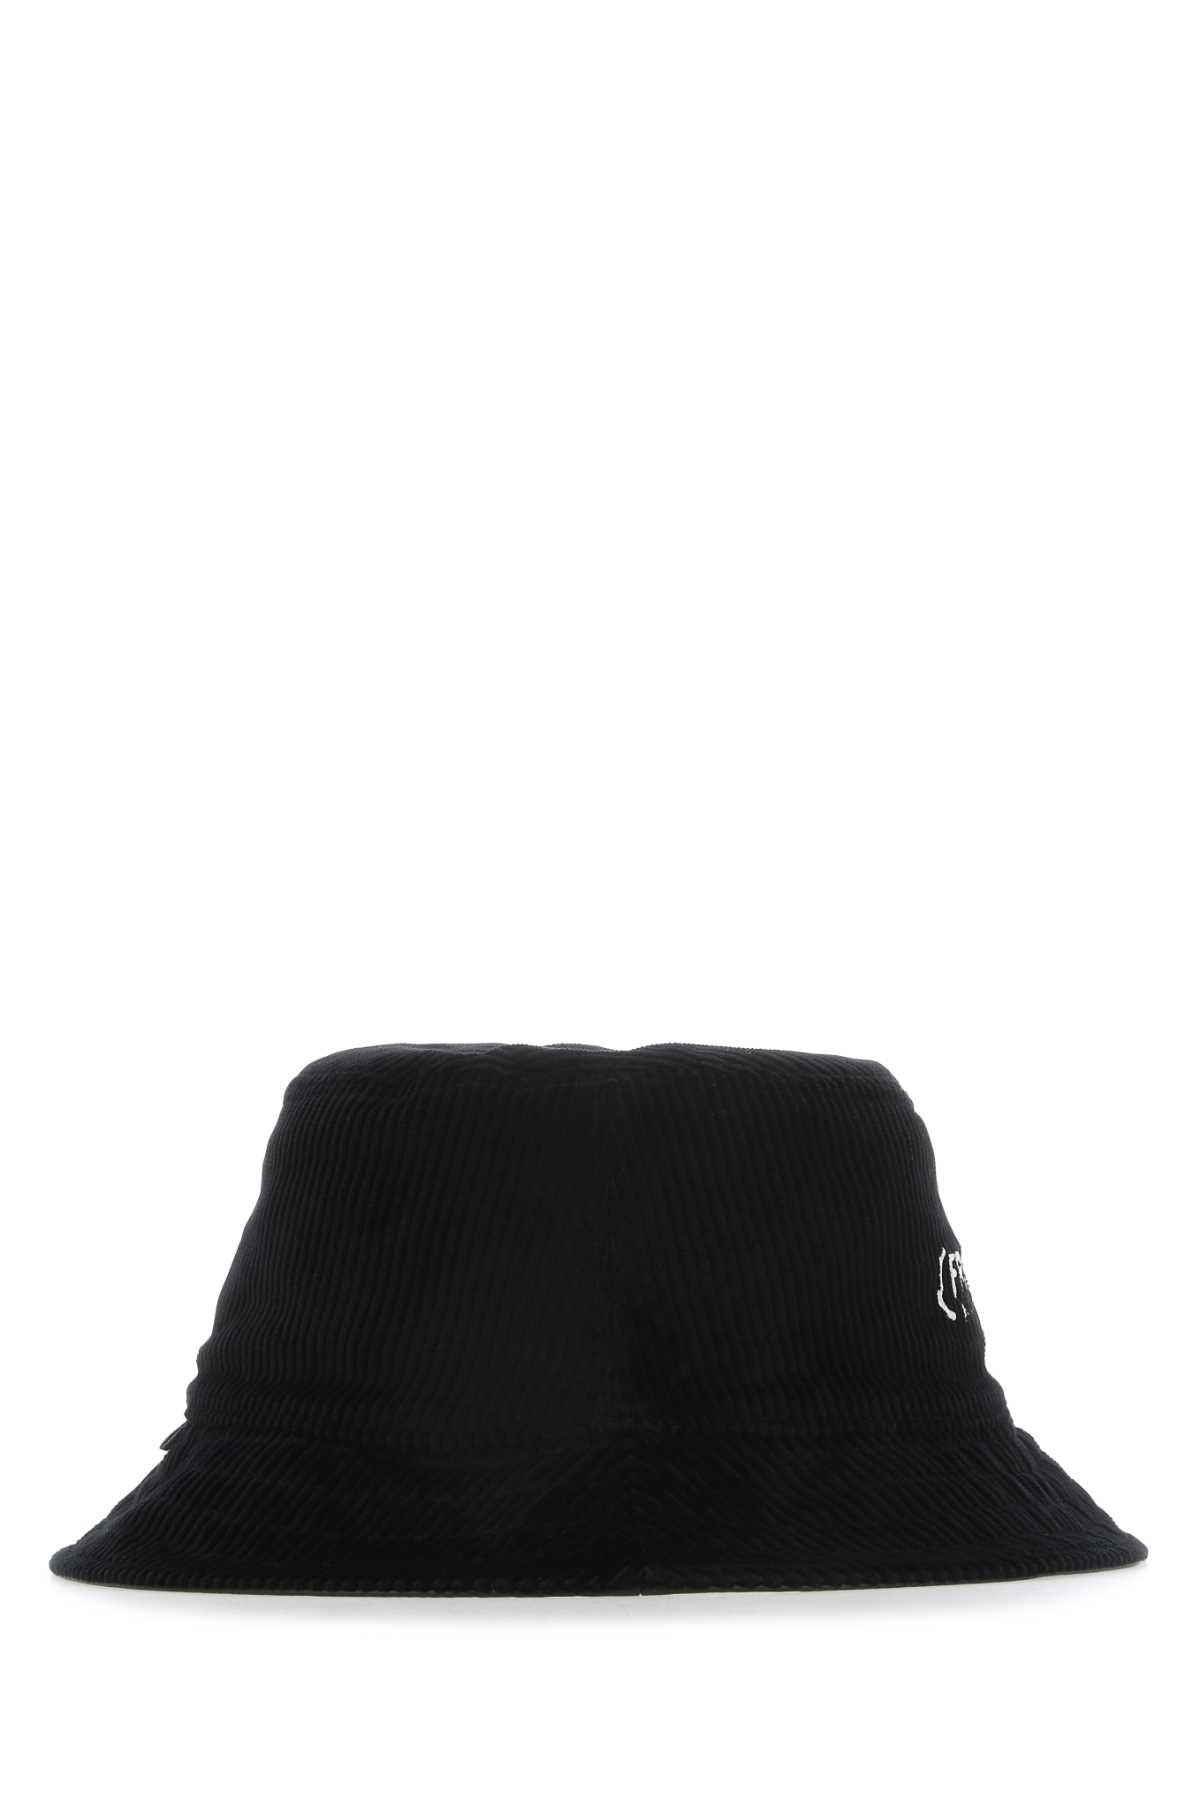 Shop Moncler Genius Black 7 Moncler Fragment Hiroshi Fujiwara Hat In 999